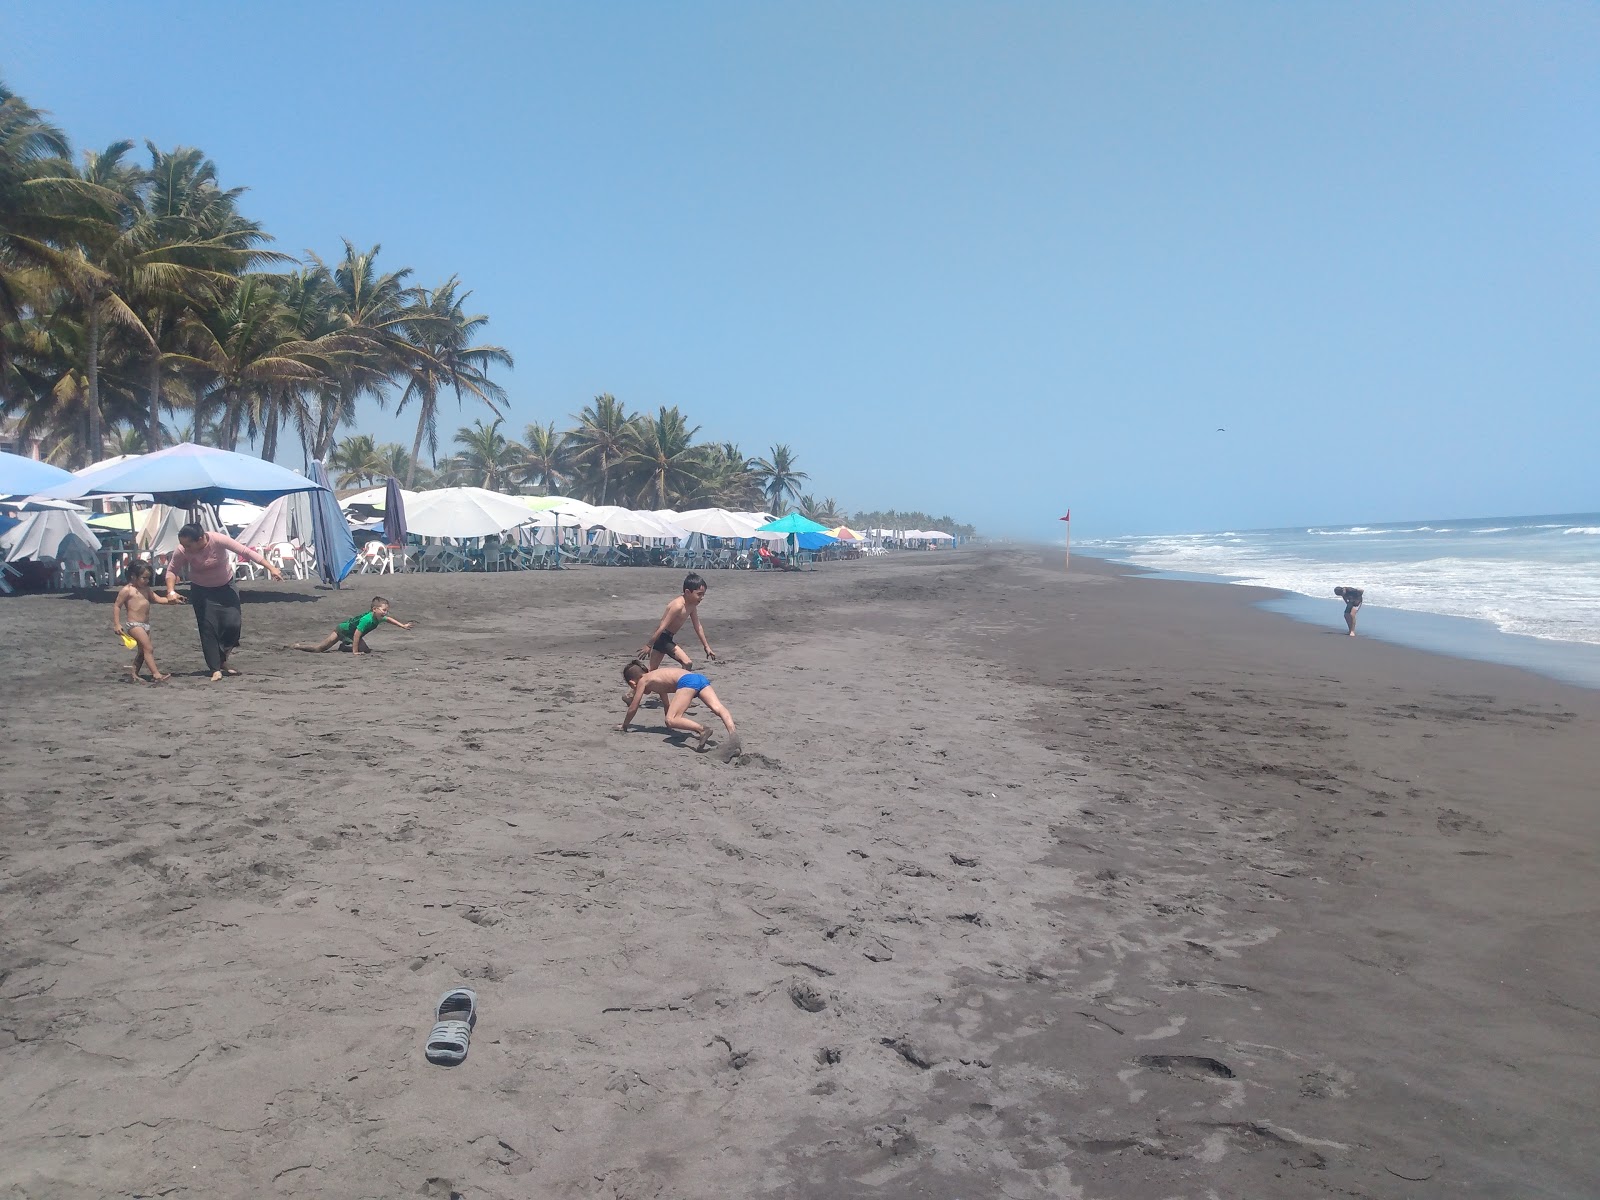 Playa de Cuyutlan III'in fotoğrafı kahverengi kum yüzey ile